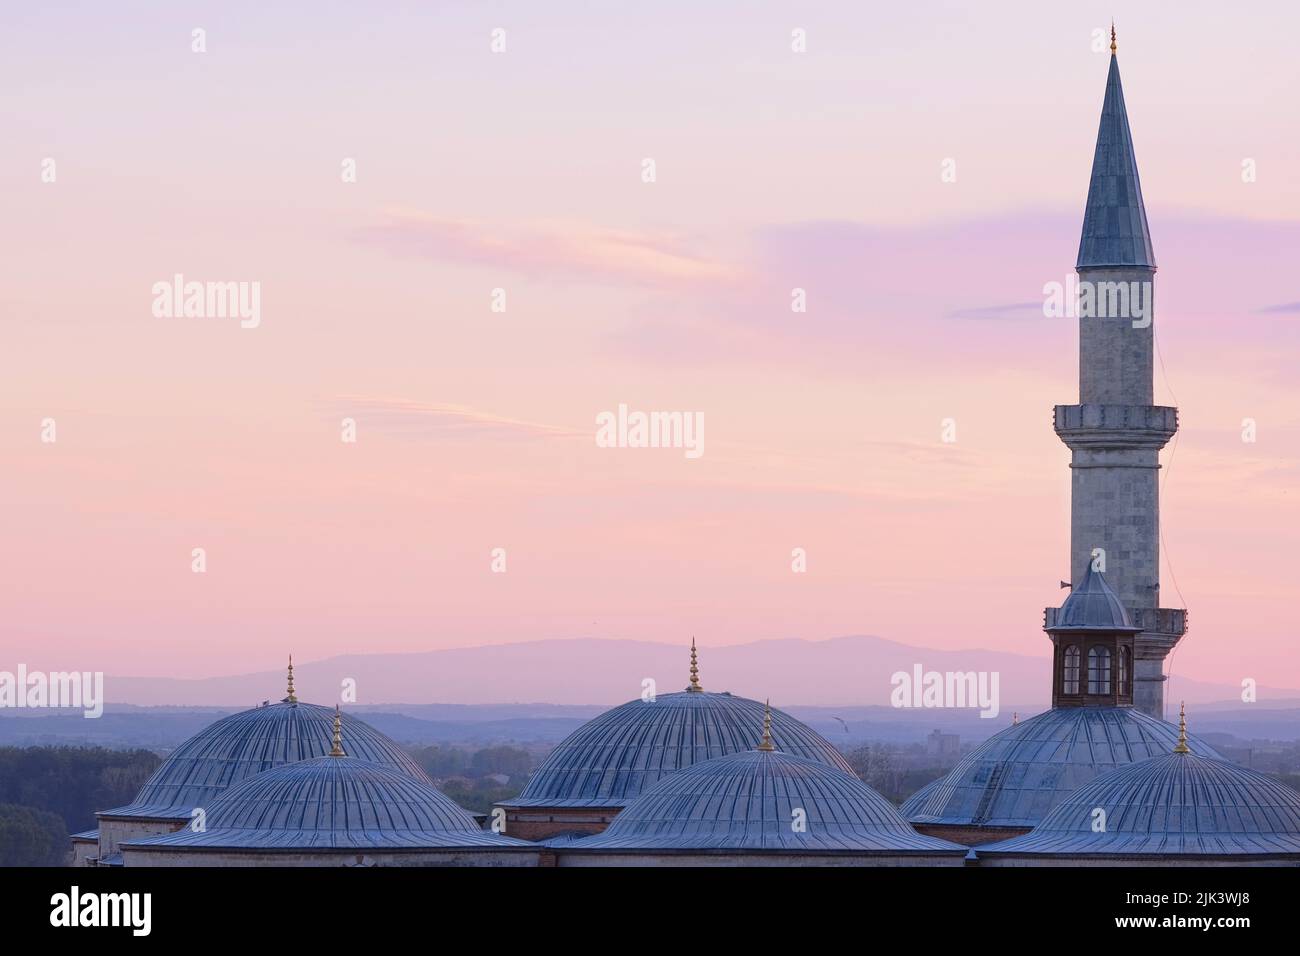 Edirne, Türkei - Oktober 2021: Kuppeln der Alten Moschee (eski camii) Blick bei Sonnenuntergang mit purpurem Himmel in der alten Hauptstadt des Osmanischen Reiches Stockfoto